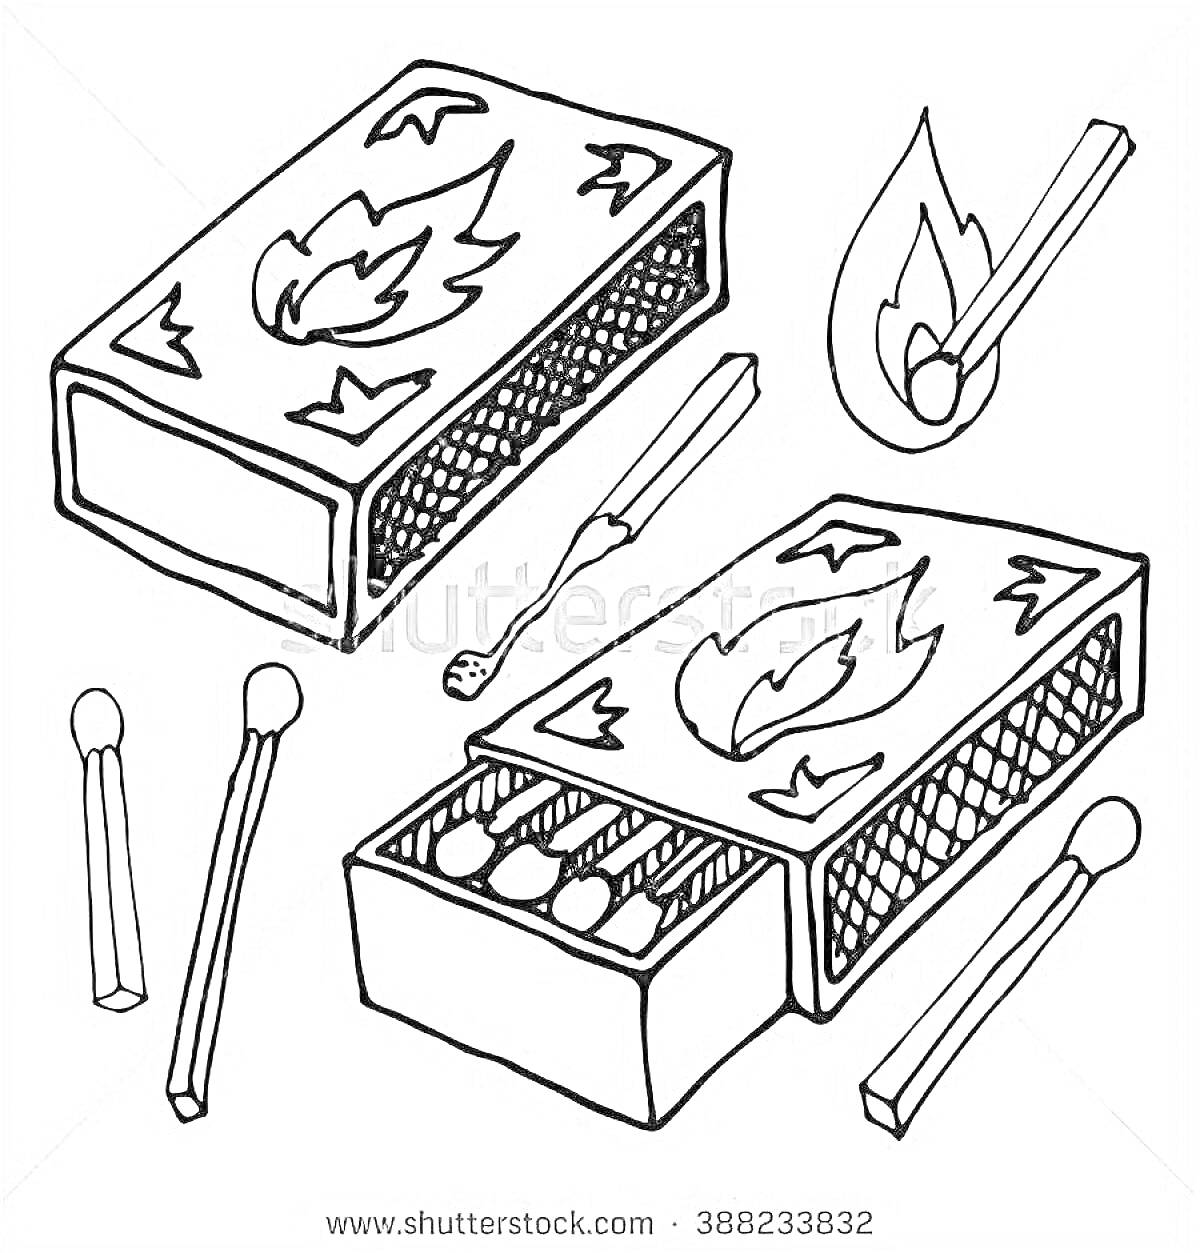 Раскраска Две спичечные коробки с изображением огня, одна открытая с видимыми спичками внутри, одна щепка и три отдельные спички, одна из которых горит